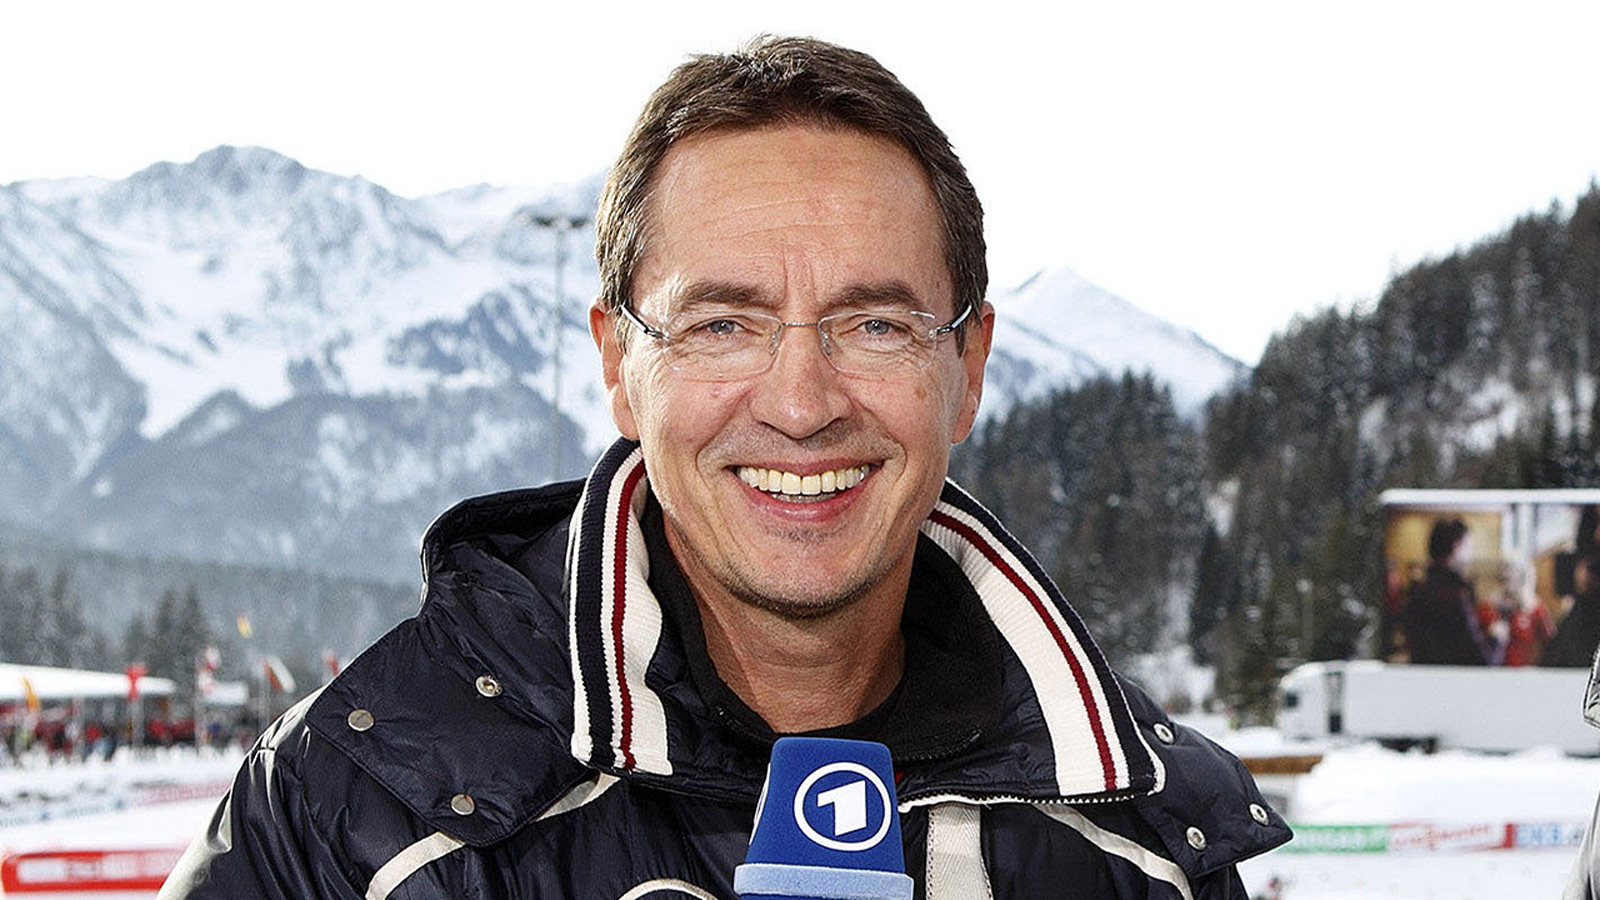 Sportschaukommentator Wilfried Hark